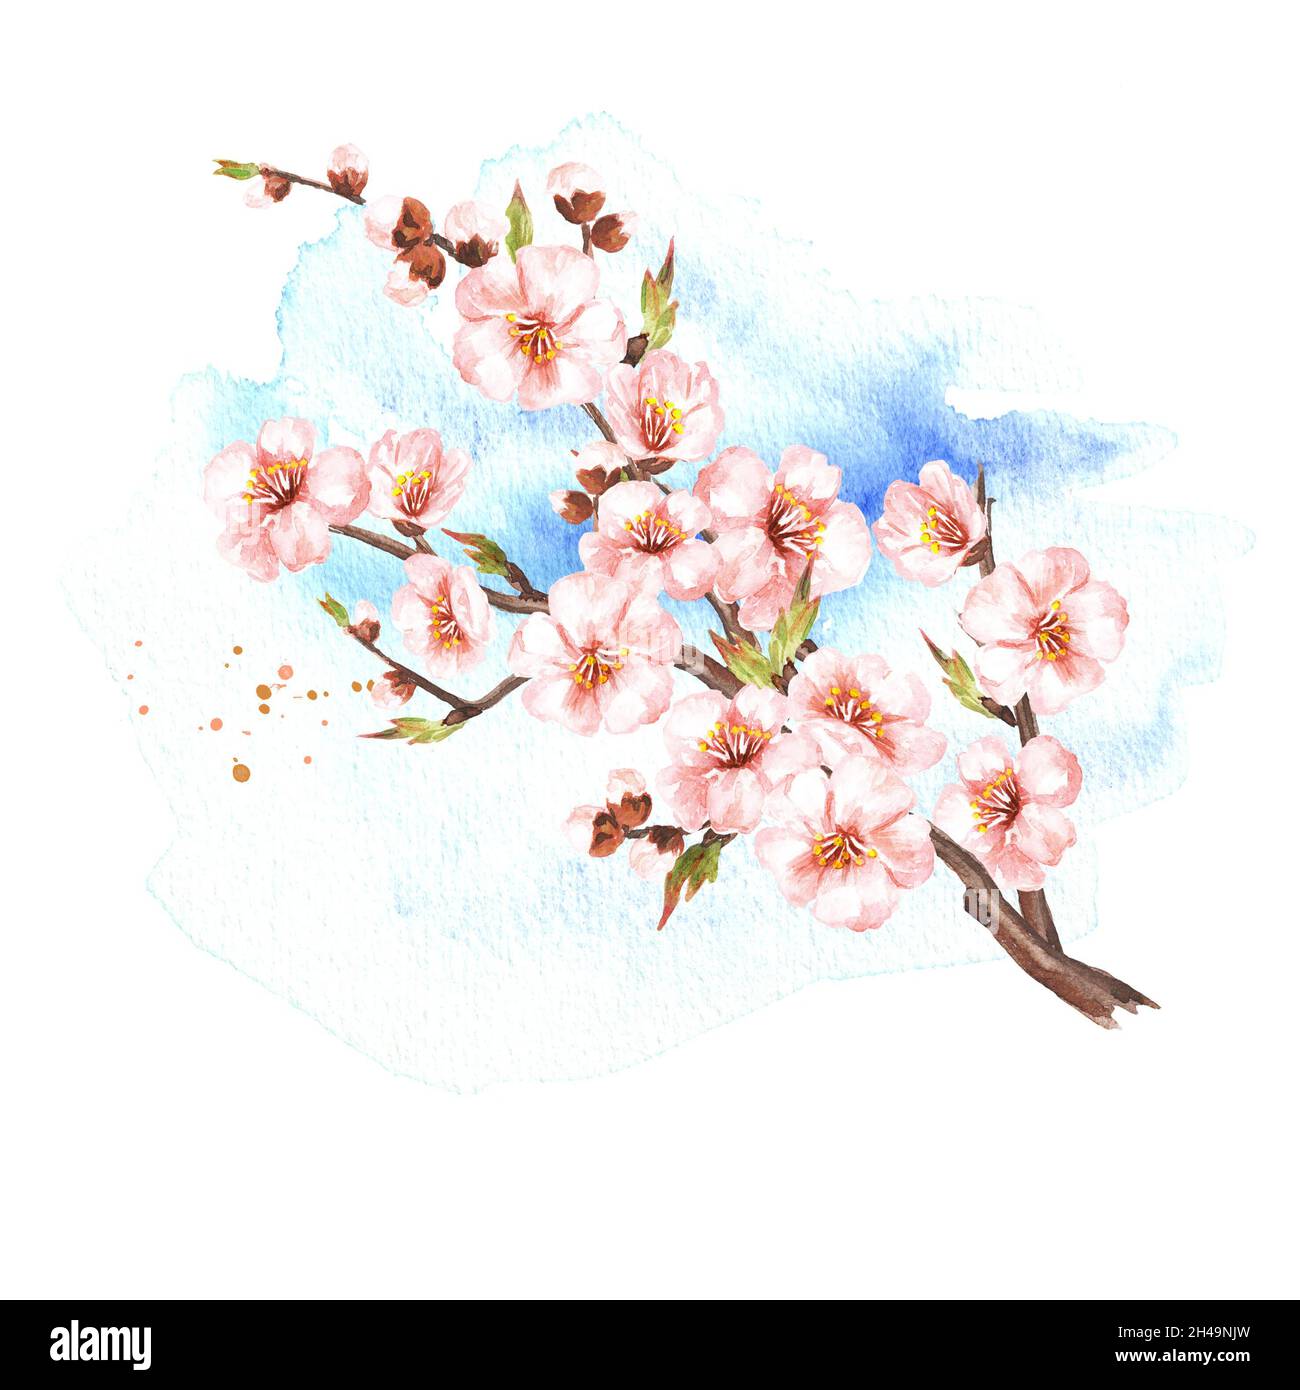 Branche sakura à fleurs printanières.Illustration aquarelle dessinée à la main, isolée sur fond blanc Banque D'Images